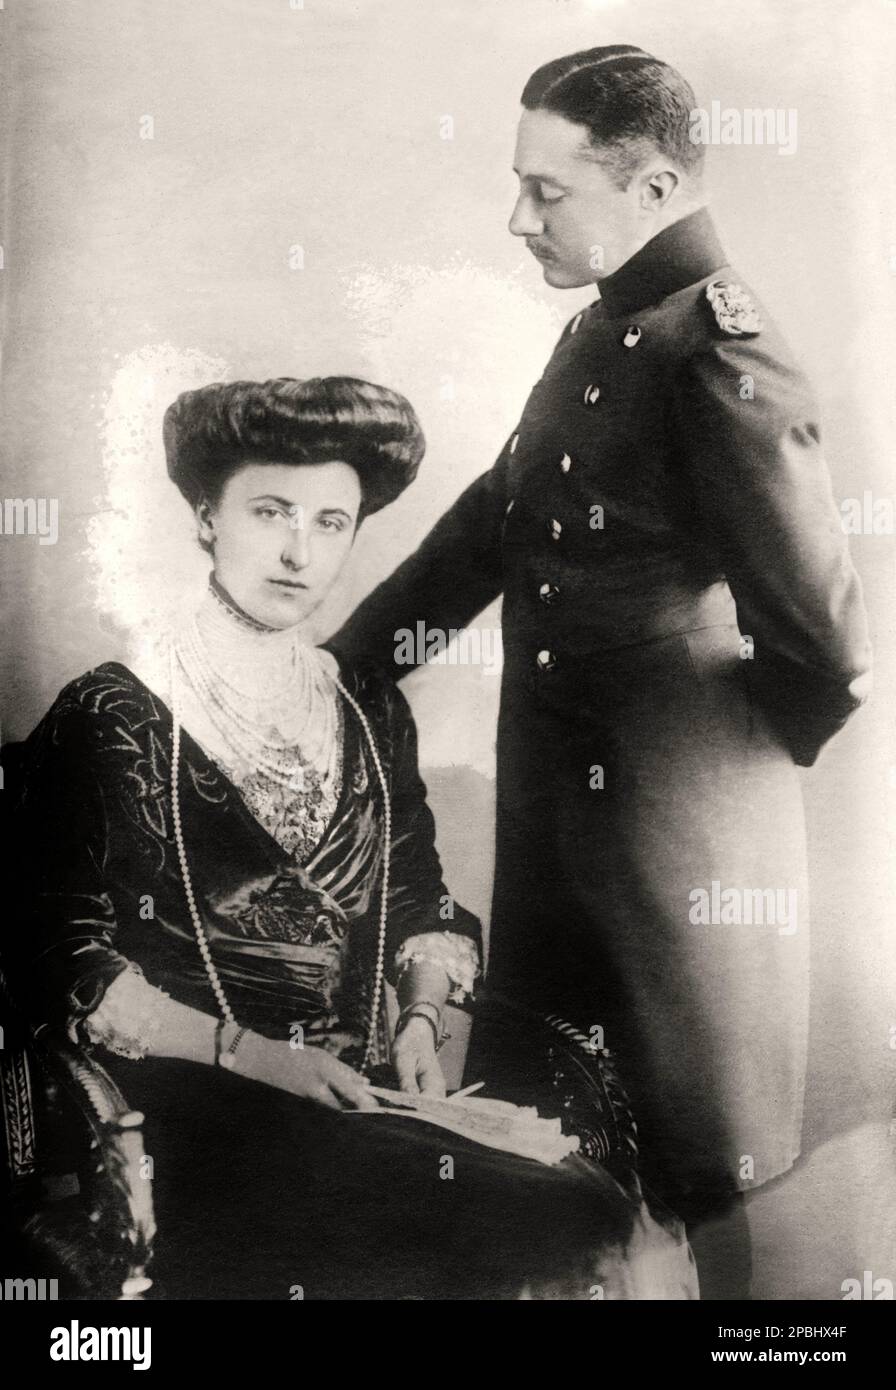 1910 Ca : deutscher Großherzog WILHELM ERNST von SACHSEN WEIMAR EISENACH ( 1876 - 1923 ) mit Ehefrau Feodora von Sachsen-Meiigen . Er wurde in Weimar geboren , dem ältesten Sohn von Karl August von Sachsen-Weimar-Eisenach ( 1844 - 1894 ) , dem Erbgroßherzog und seiner Frau Pauline von Sachsen-Weimar-Eisenach ( einer entfernten Cousine ) . Wilhelm Ernst folgte am 5. Januar 1901 seinem Großvater Karl Alexander als Großherzog, da sein Vater ihn zuvor verstorben war. Wilhelm Ernst schuf den neuen Bundesstaat Weimar unter der Leitung von Hans Olde, Henry van de Velde und Adolf Brutt. Außerdem erneuerte er die Universität von Jena durch Theo Stockfoto